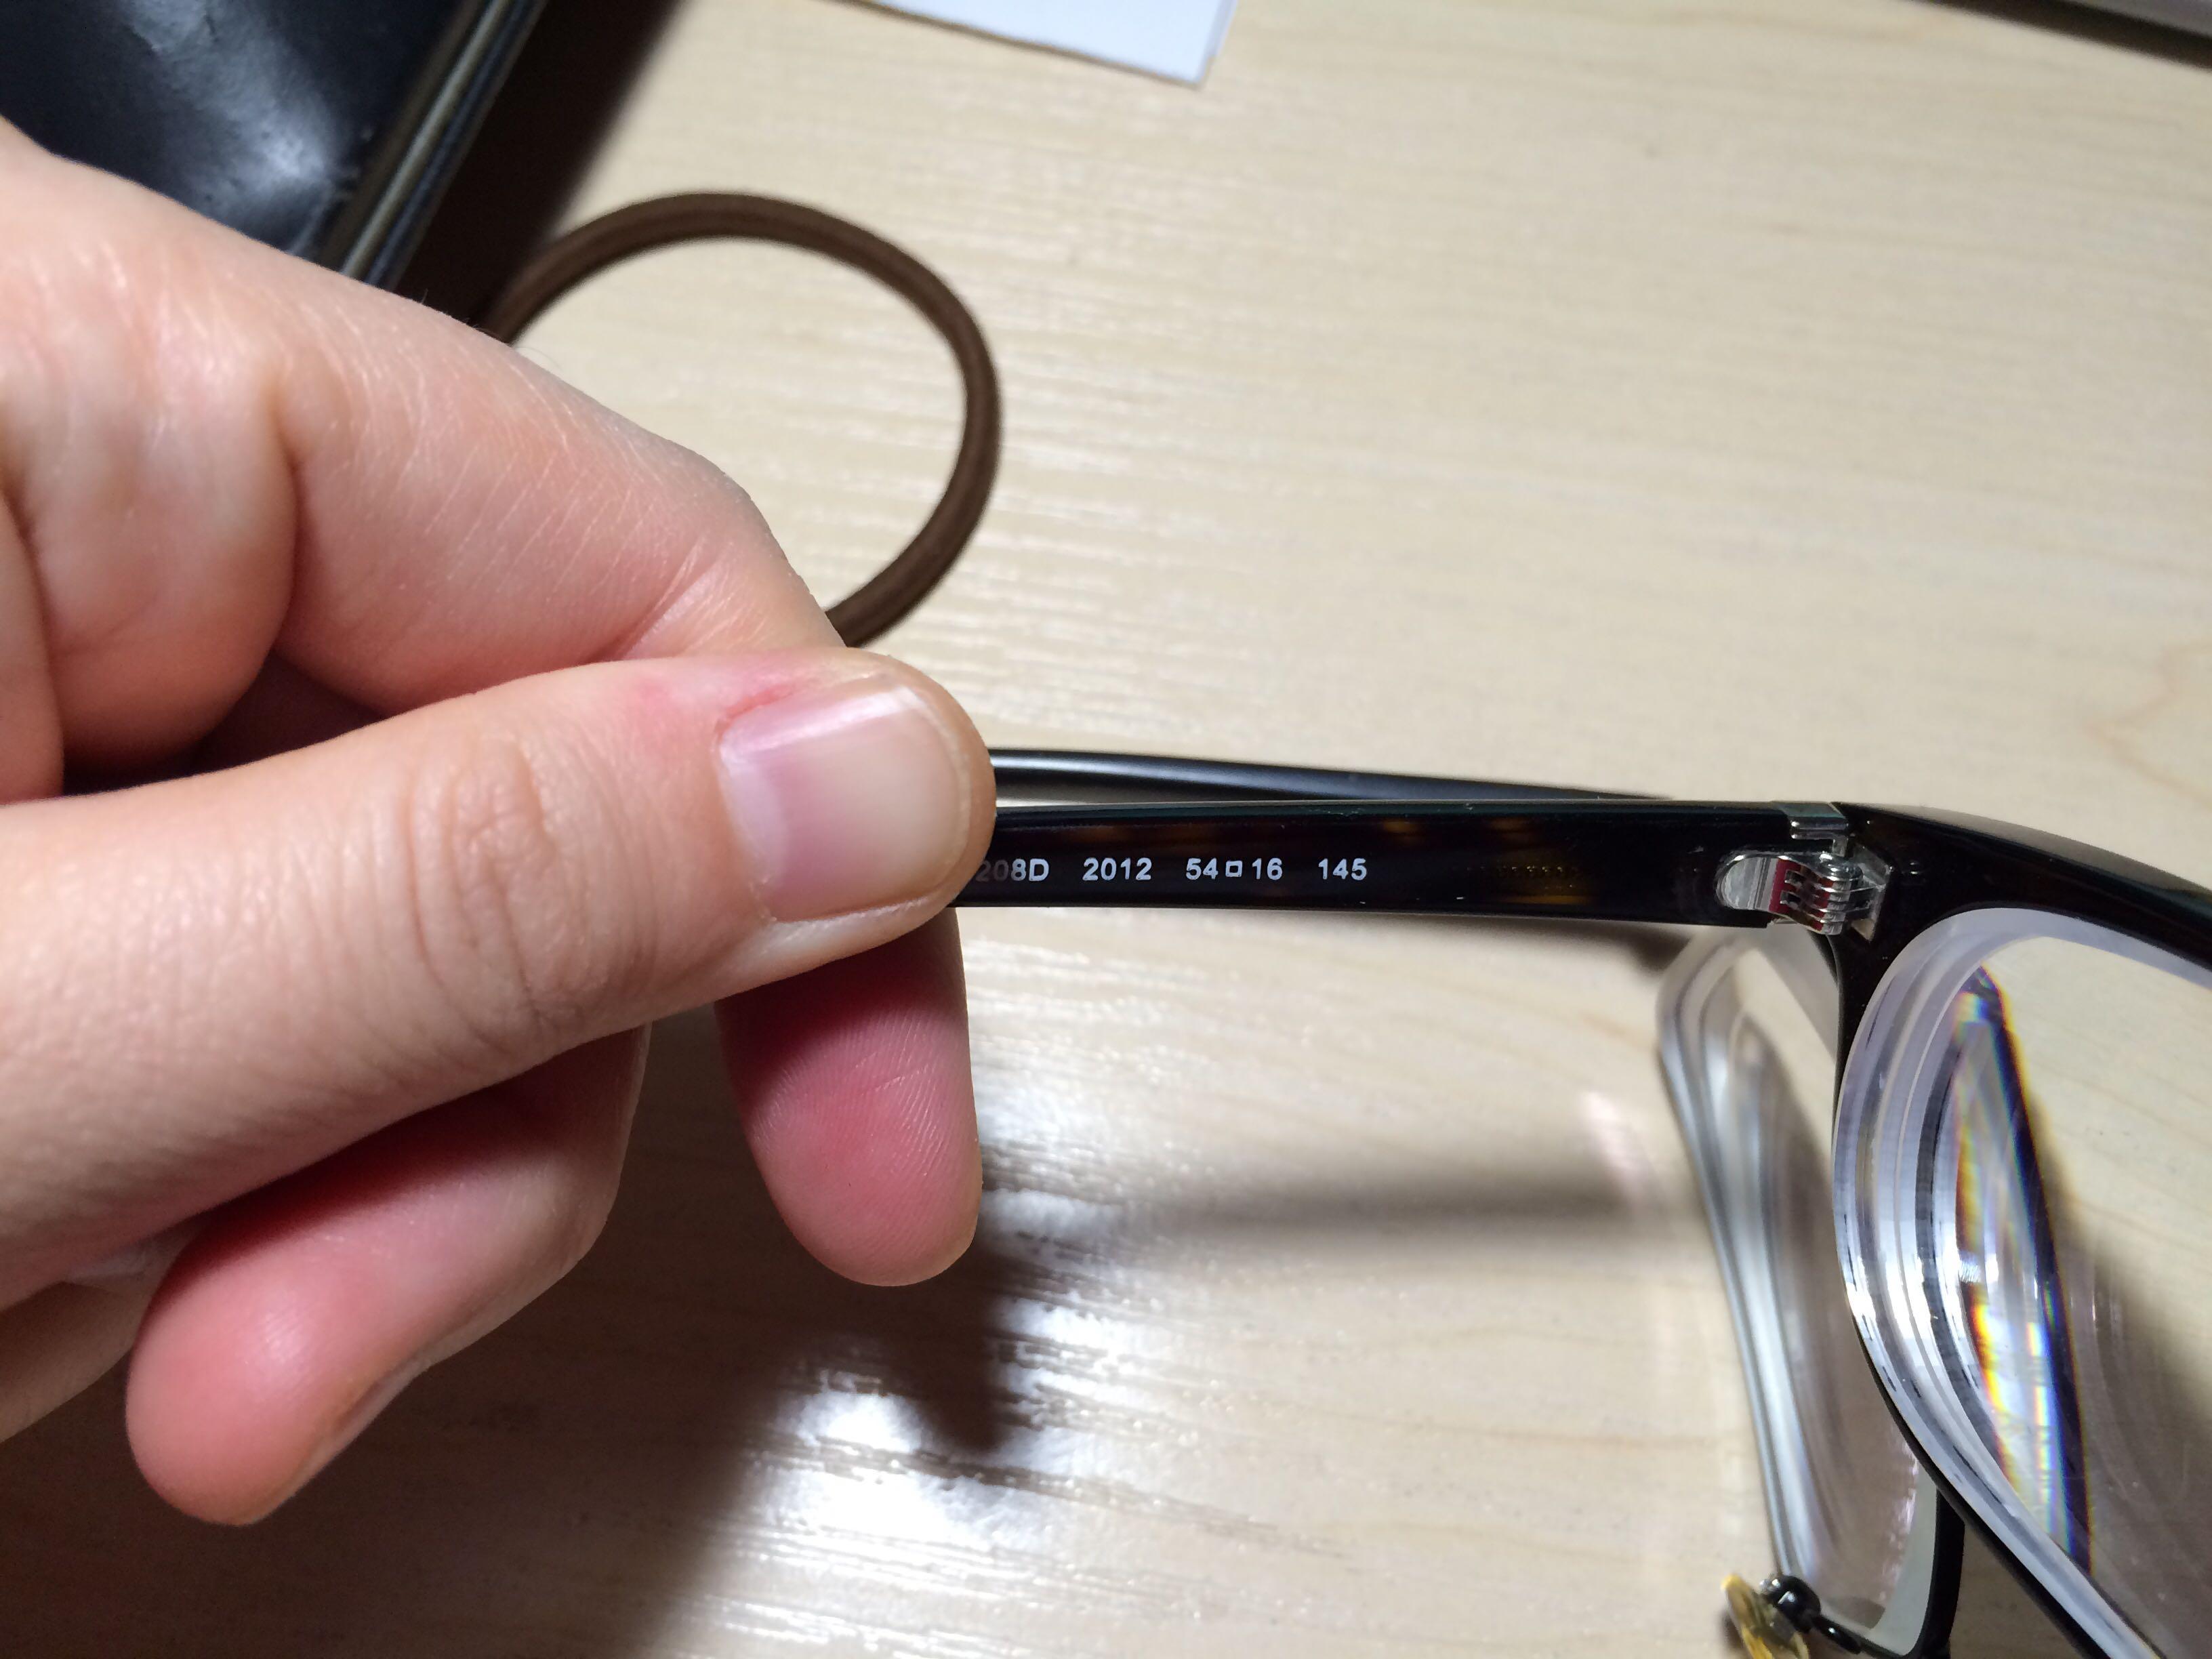 眼镜的轴向数据变化会导致看近处的字模糊么?